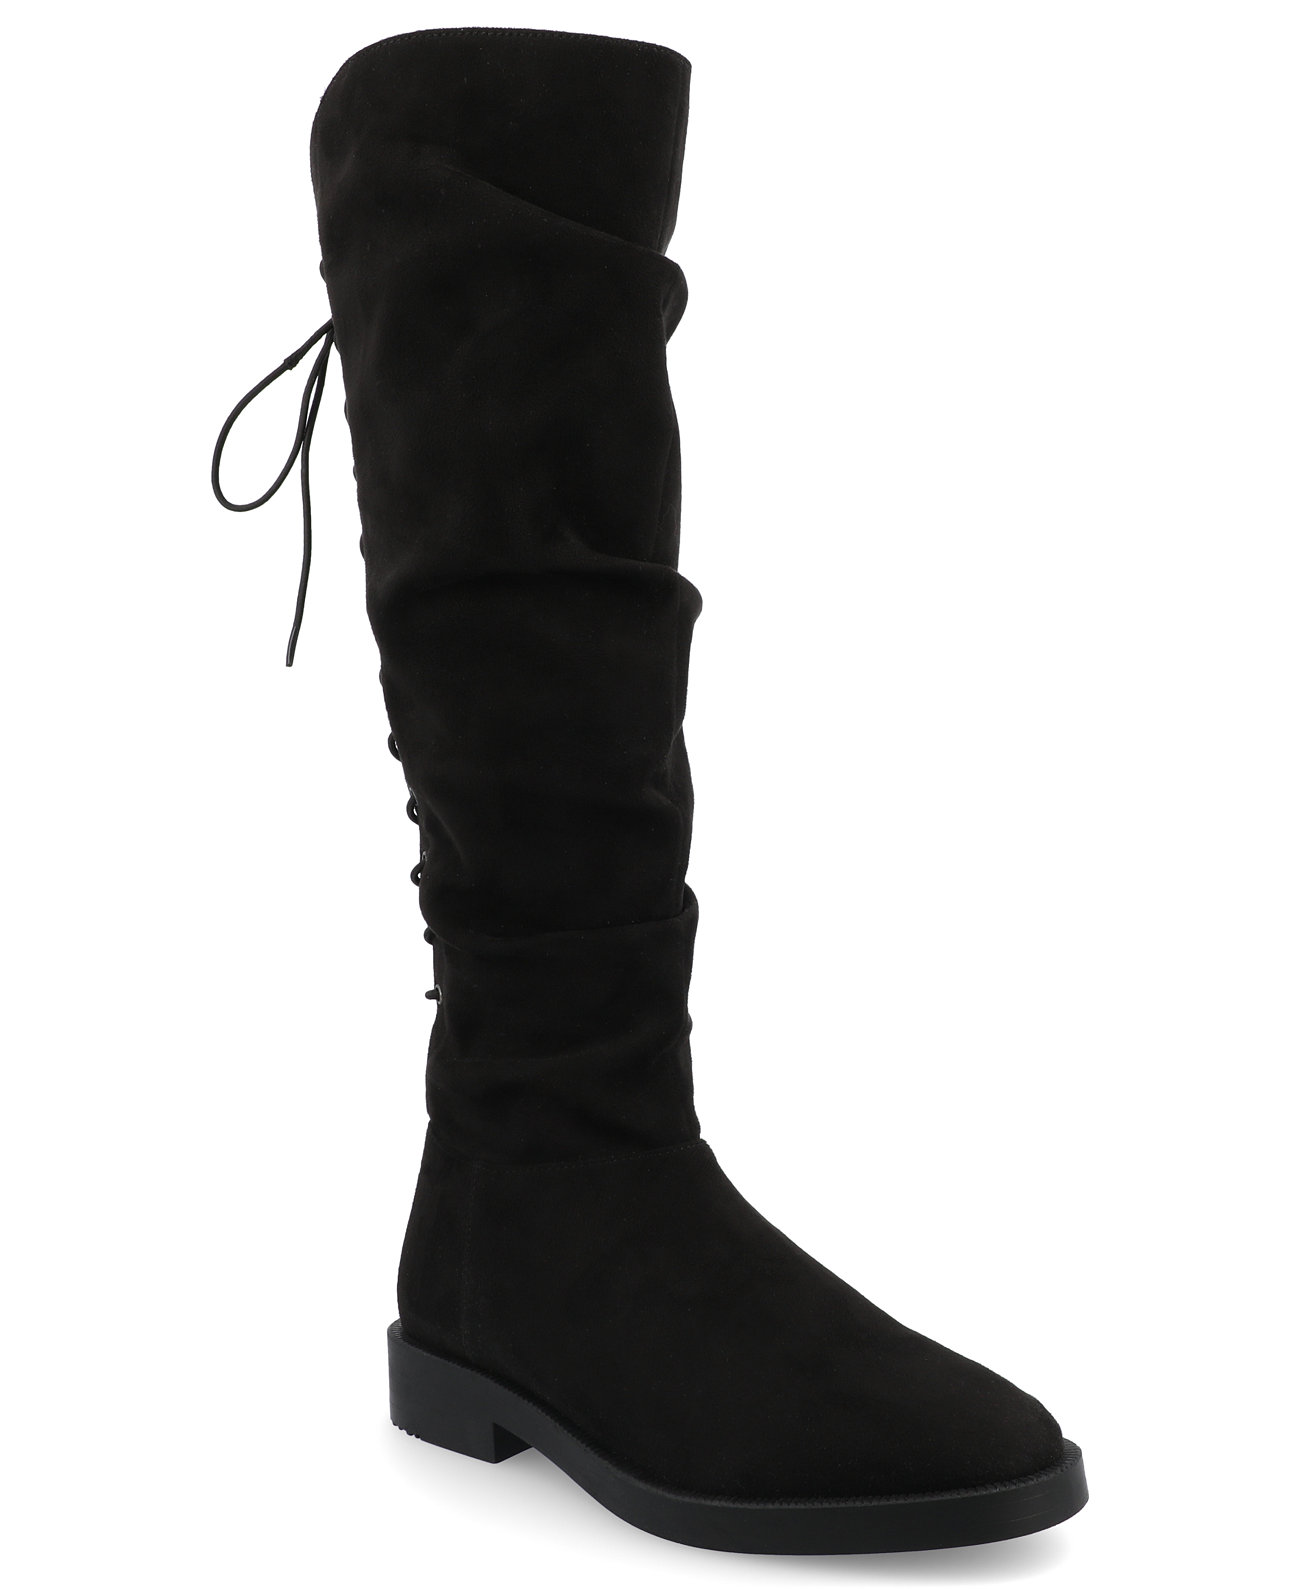 Женские эластичные ботинки до колена Mirinda Tru Comfort стандартного размера из пеноматериала Journee Collection